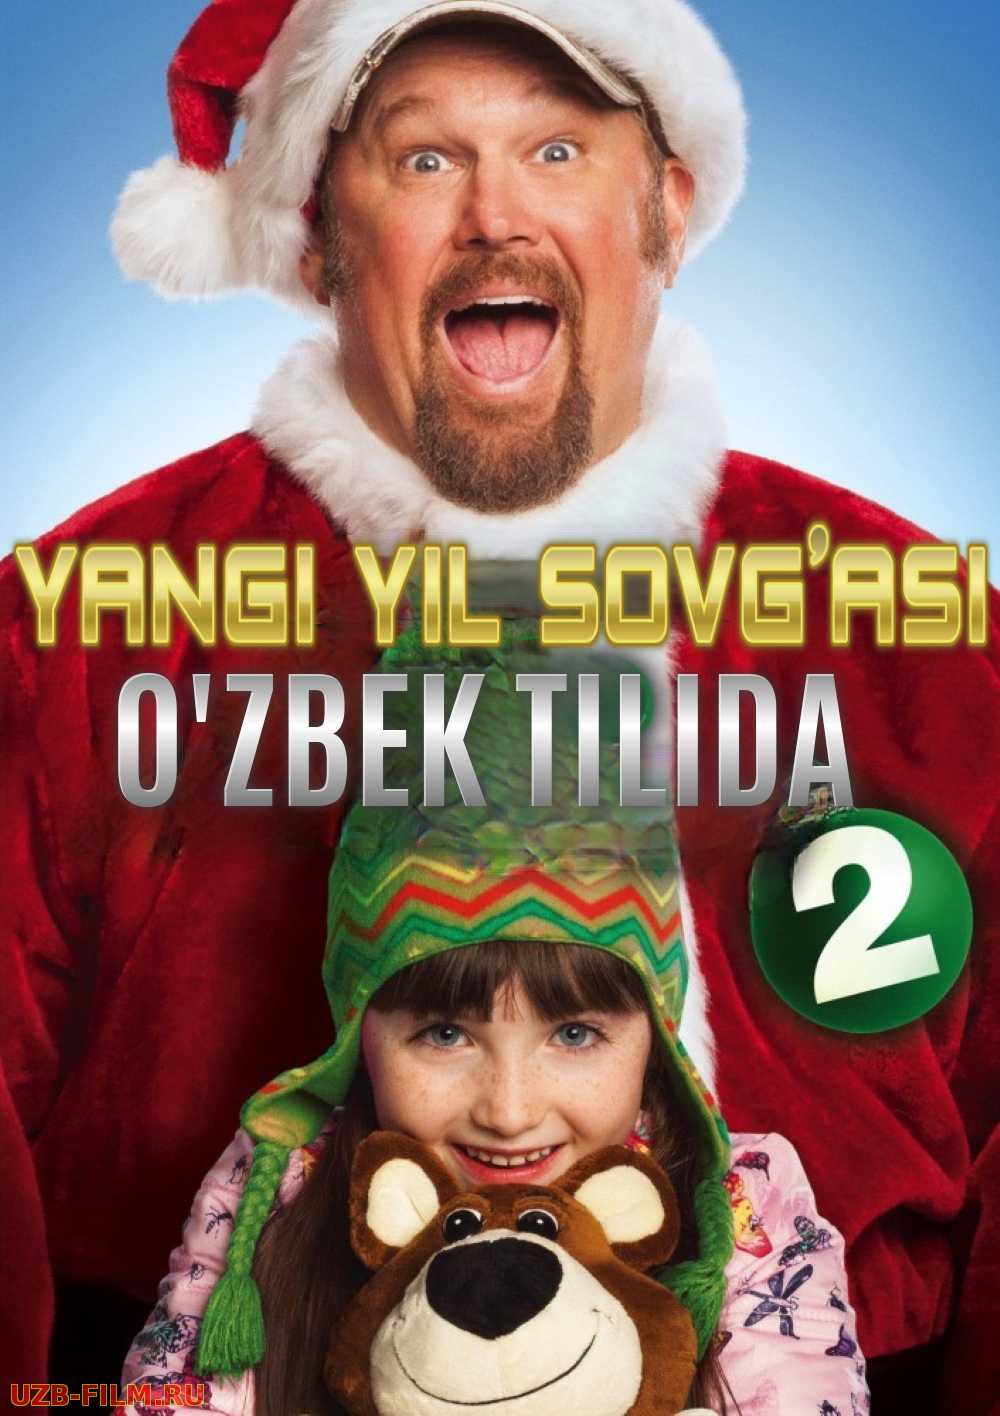 Yangi yil sovg'asi 2 Uzbek tilida 2014 kino